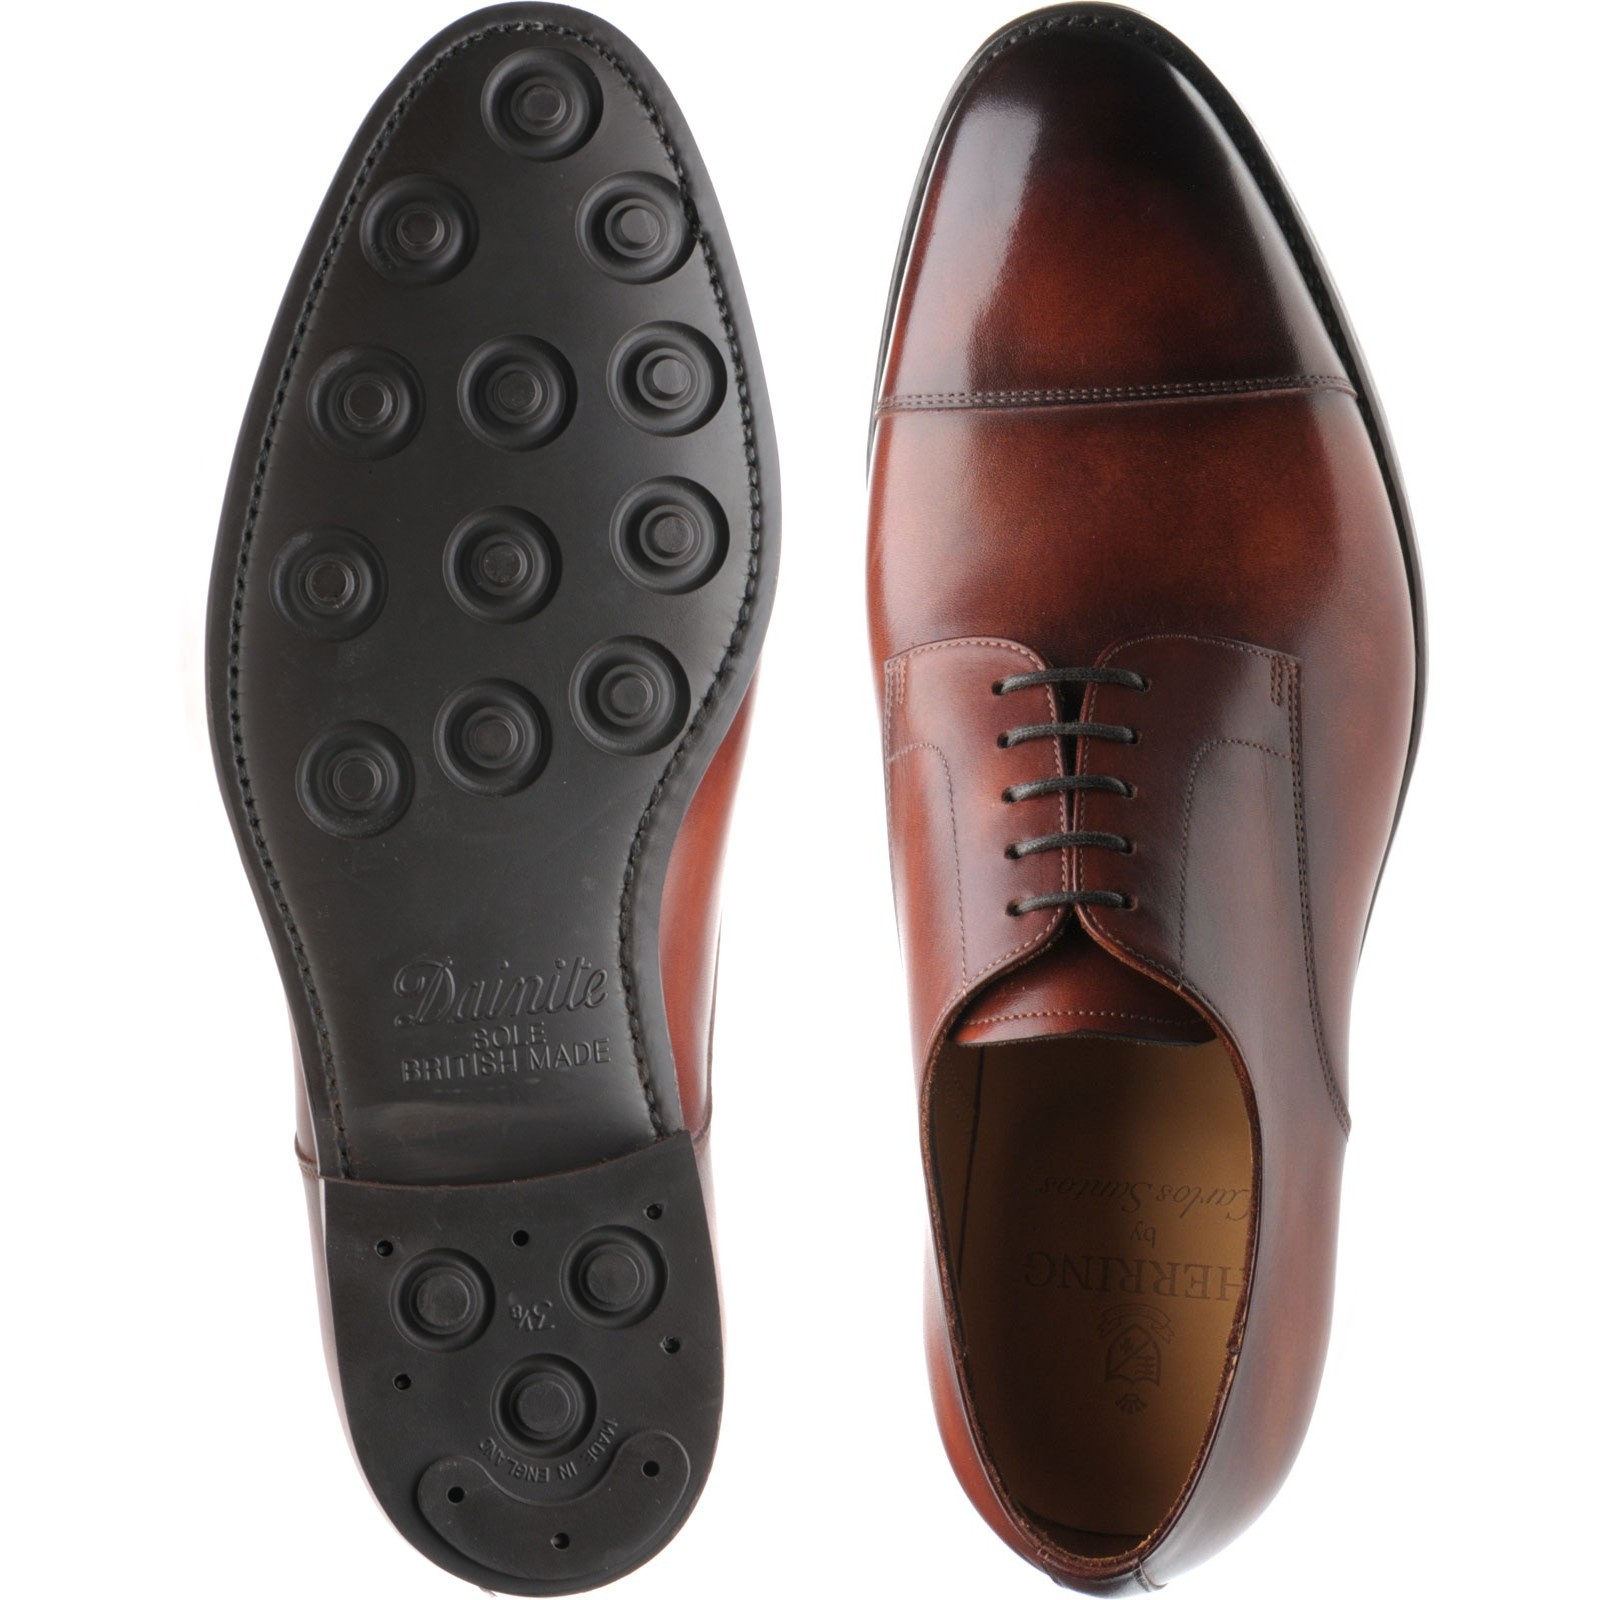 Carlos Santos shoes | Carlos Santos Patina Range | 9381 rubber-soled ...